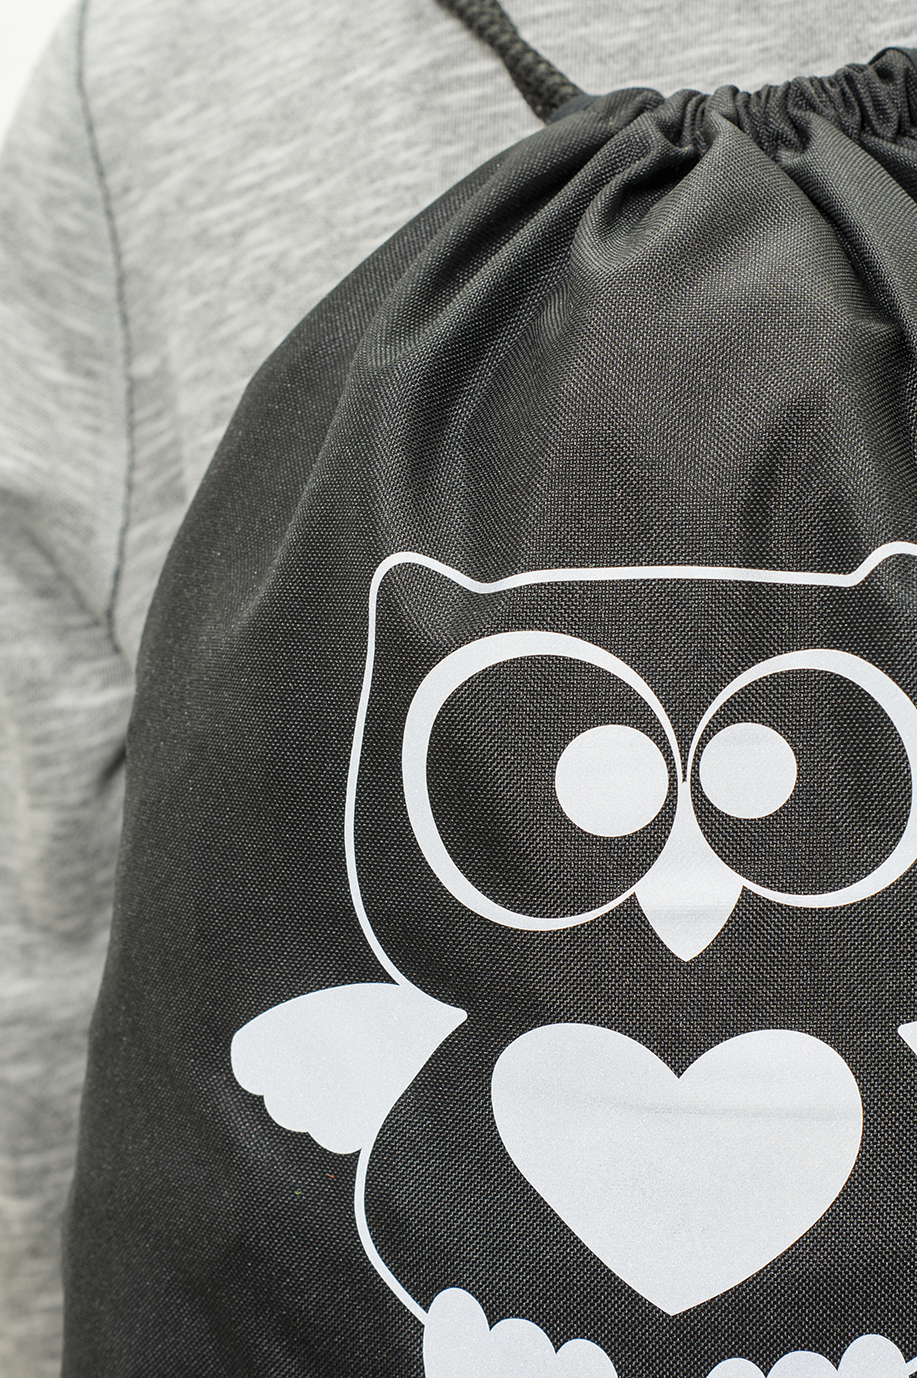 Czarny worek z odblaskowym nadrukiem OWL